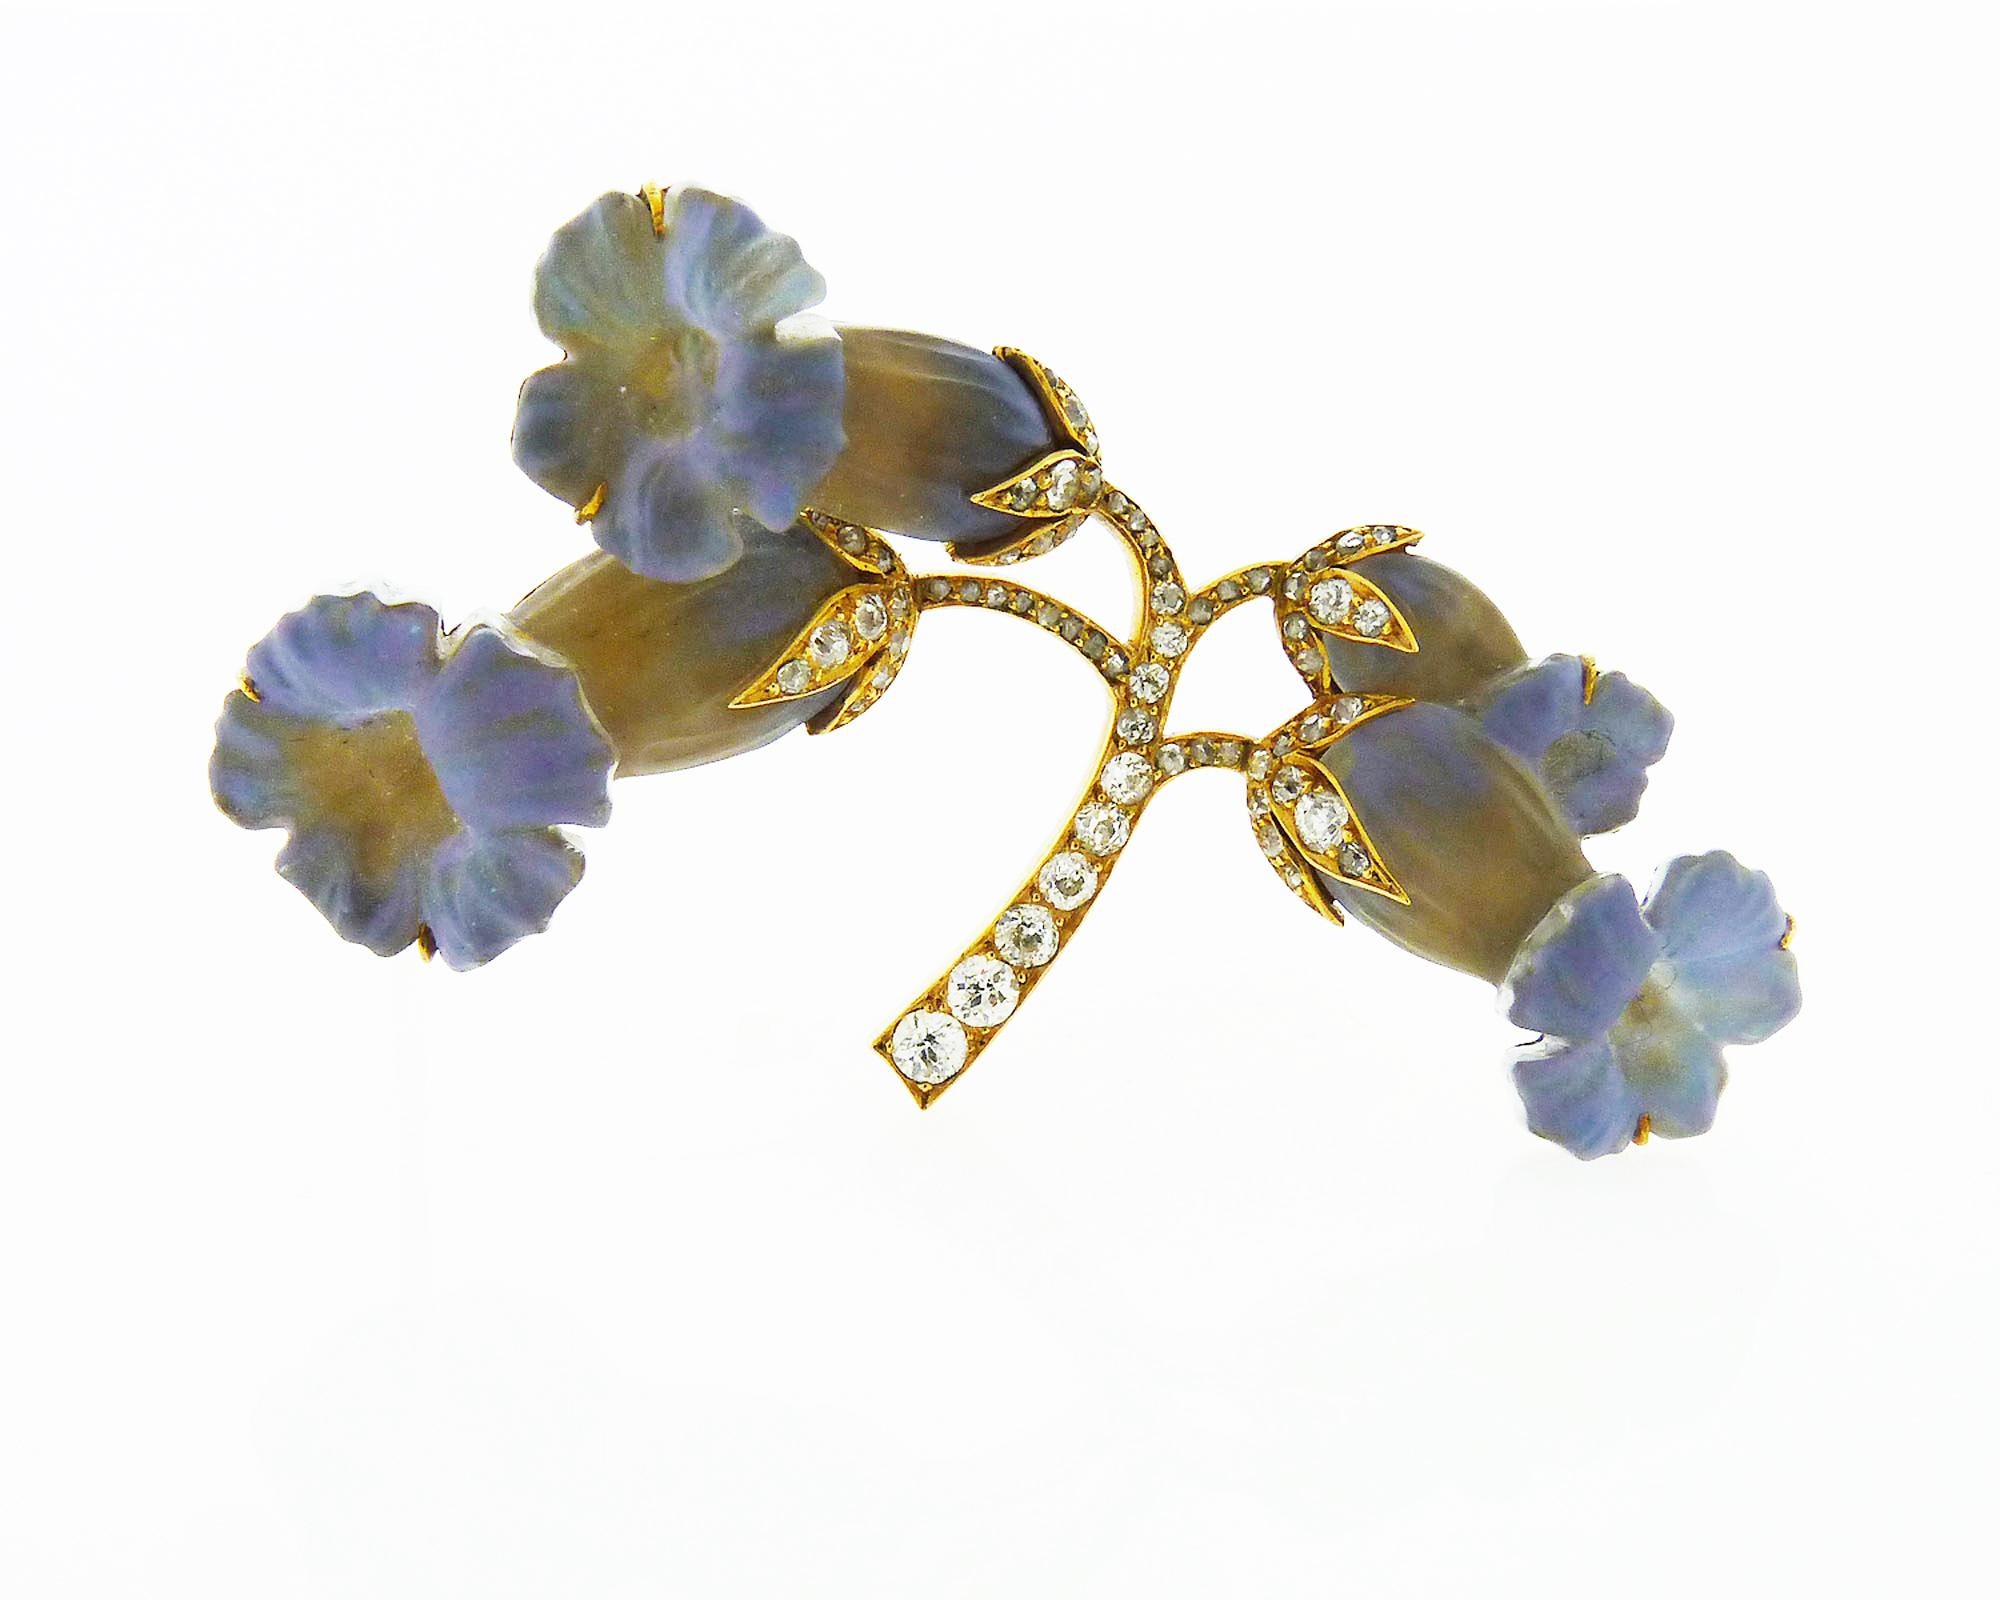 René Lalique (1860-1945), le génie incontestable de l'Art nouveau s'inspirant de la botanique et de la féminité pour créer cette magnifique broche.

Conçu comme une gerbe de jonquilles composée de verre taillé gris bleuté,
les tiges serties de